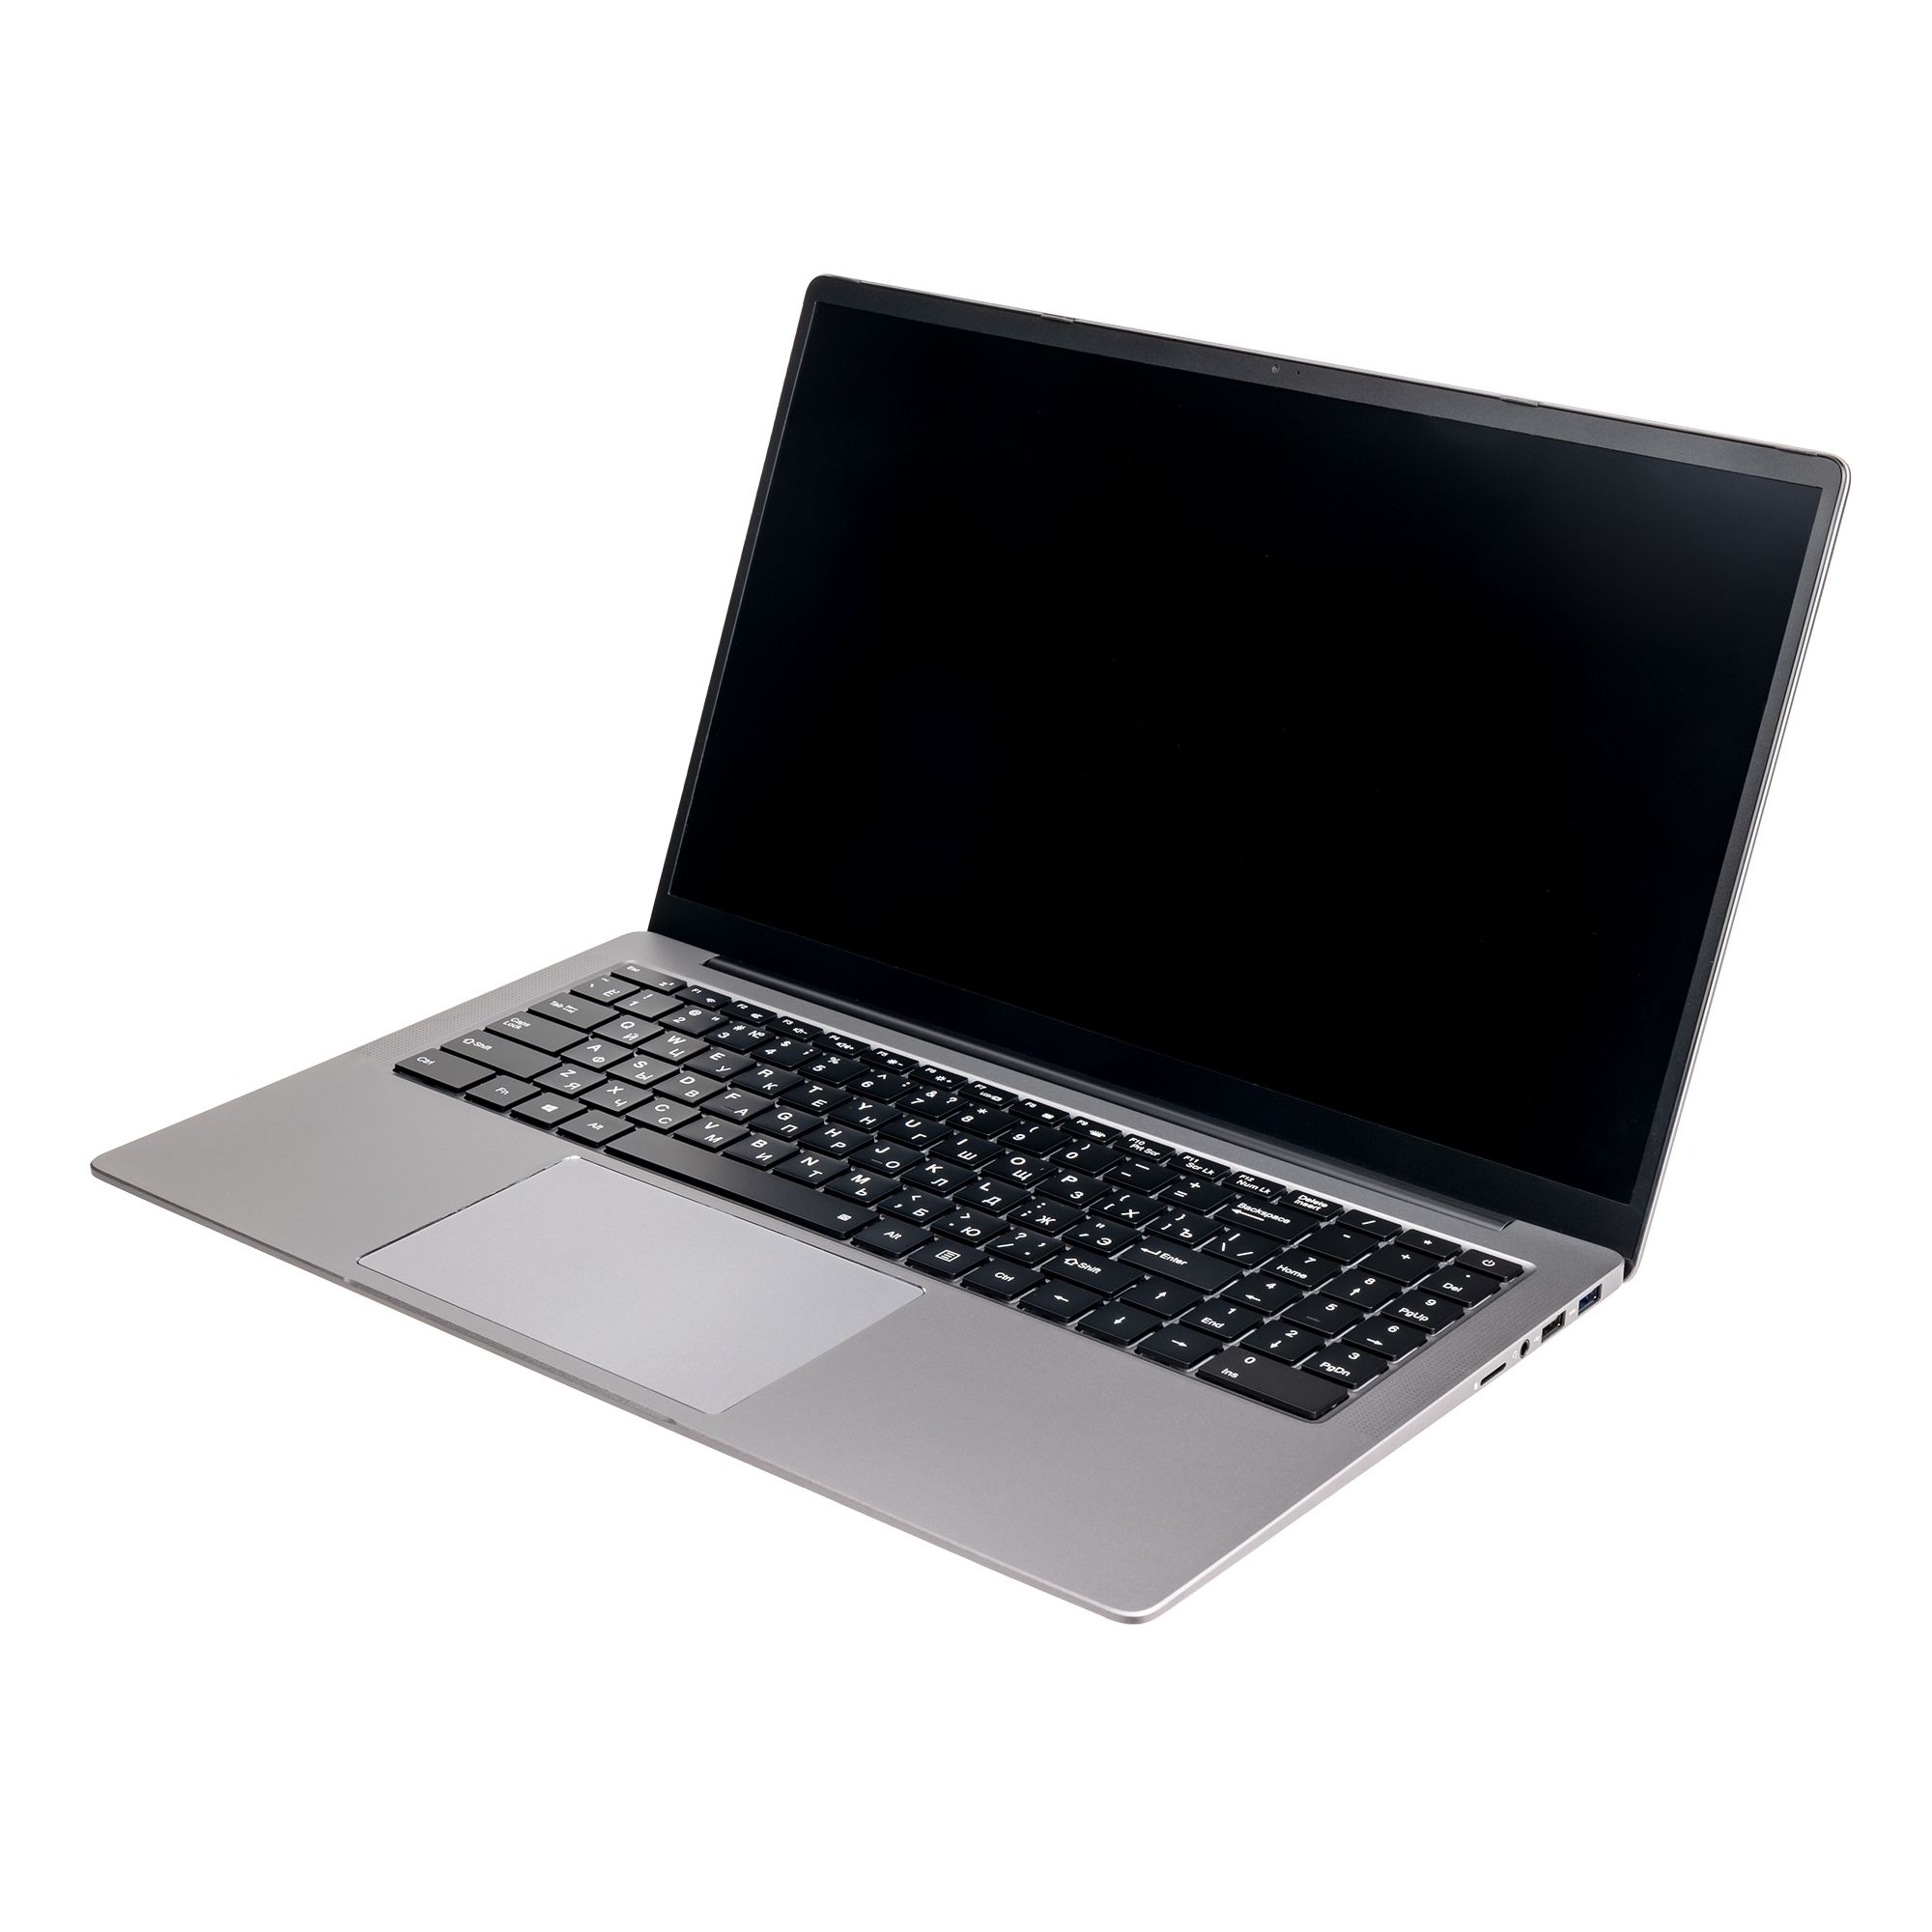 Ноутбук Hiper Expertbook MTL1601 (MTL1601D1235UDS) ноутбук hiper expertbook mtl1577 silver c53qhd0a